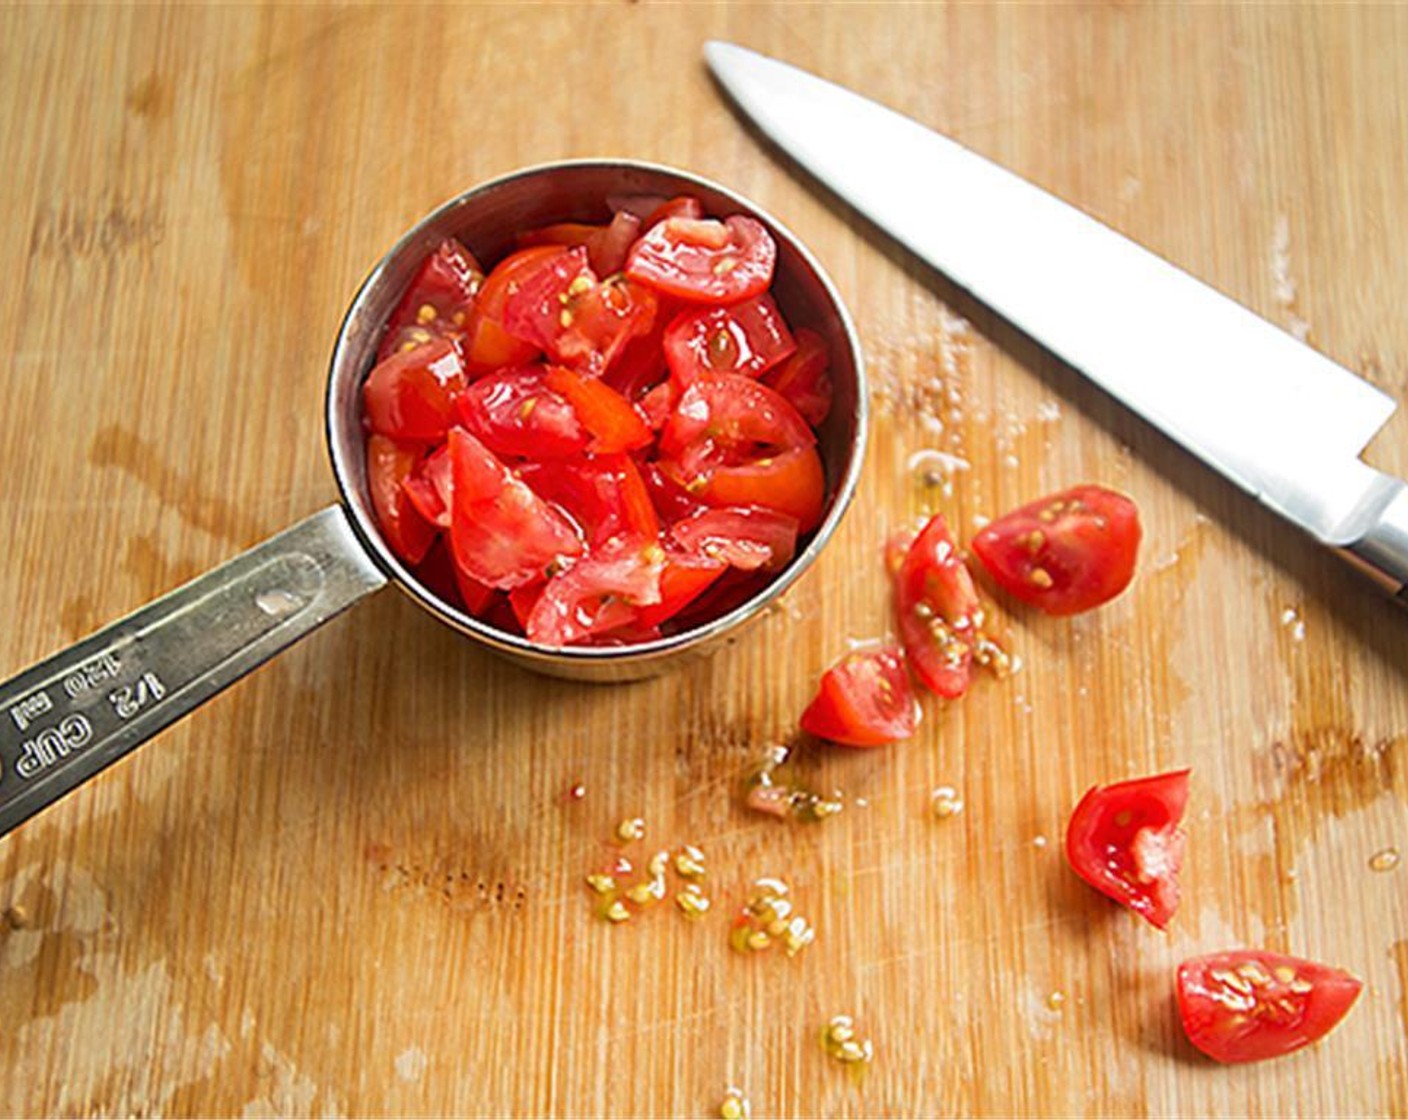 Schritt 4 Tomaten (90 g) würfeln und unterrühren. Unbedeckt 5 Minuten köcheln lassen oder bis die Flüssigkeit verdampft ist.